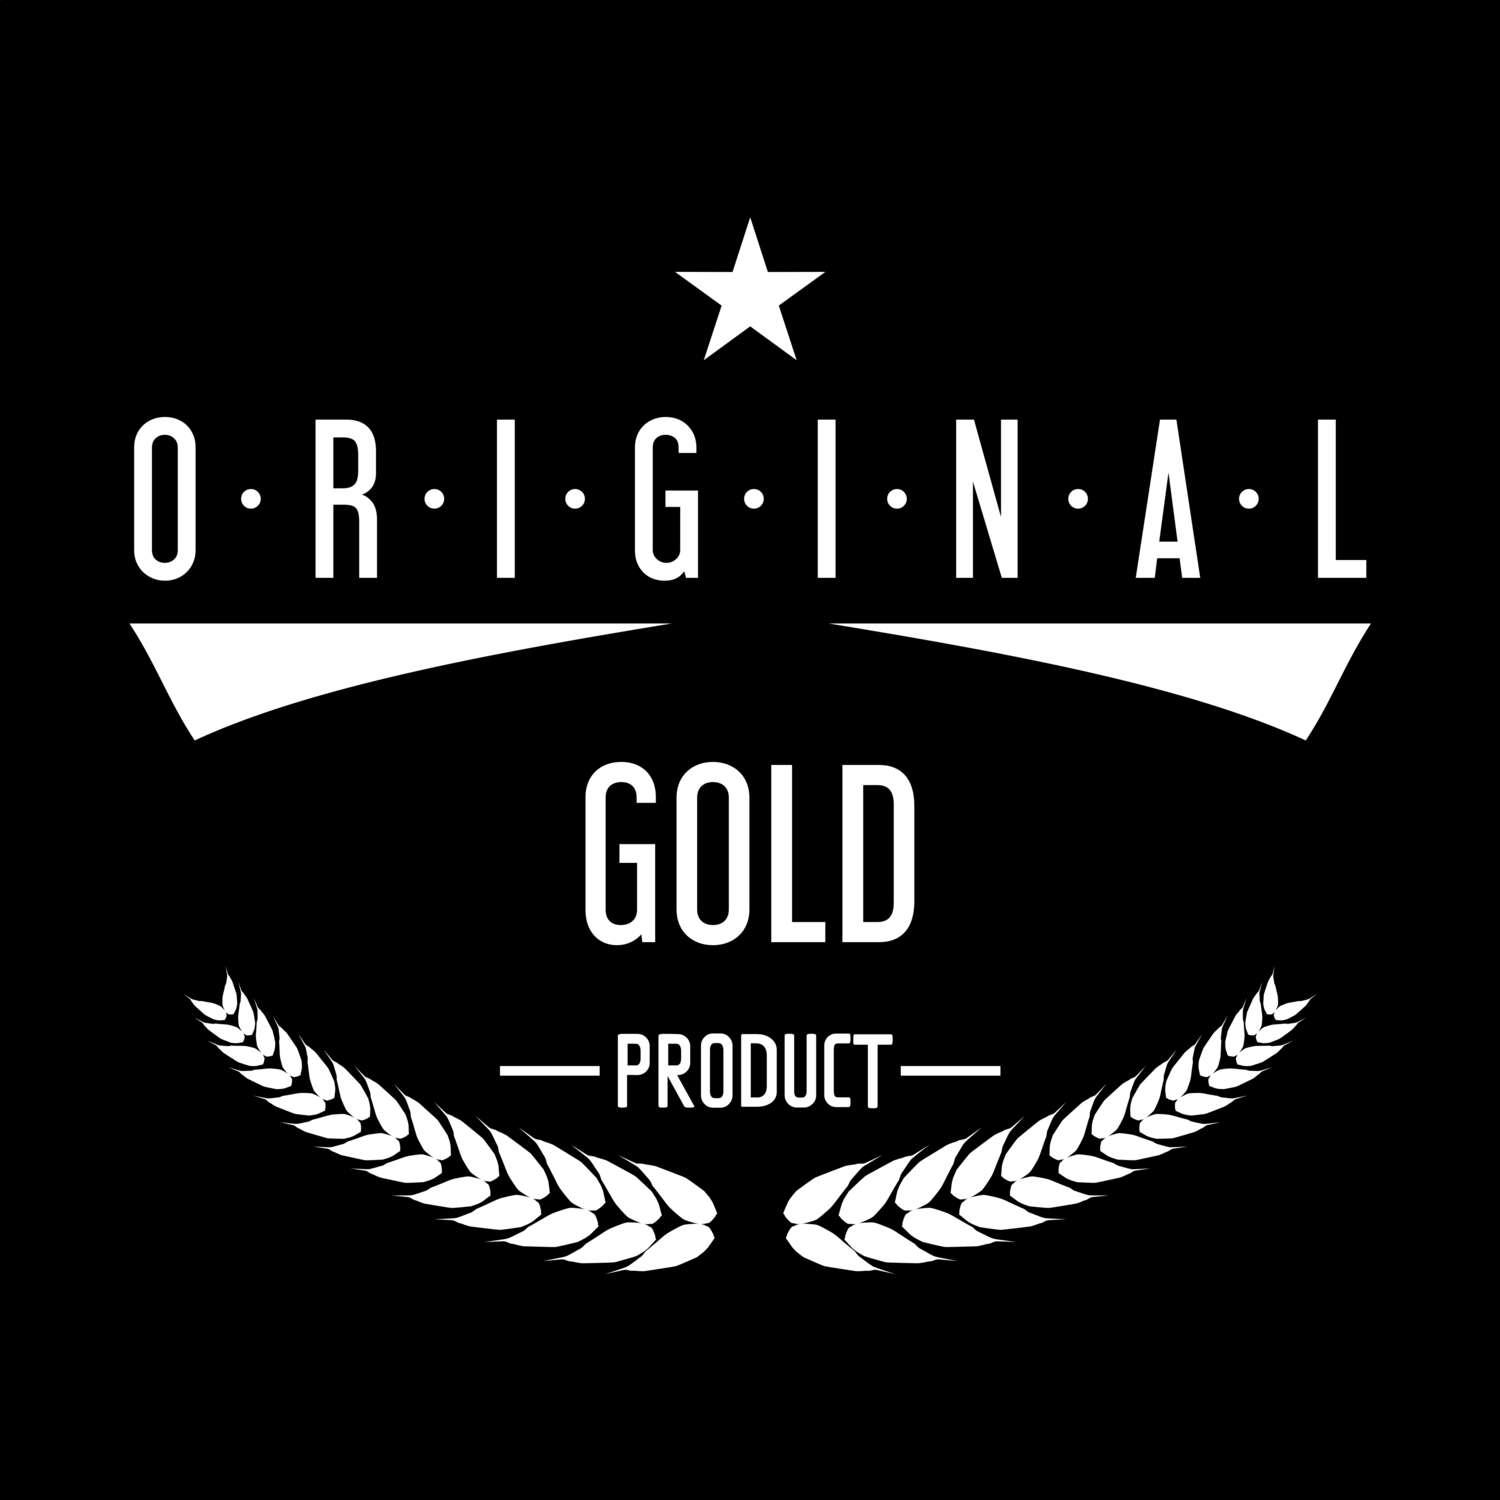 Gold T-Shirt »Original Product«